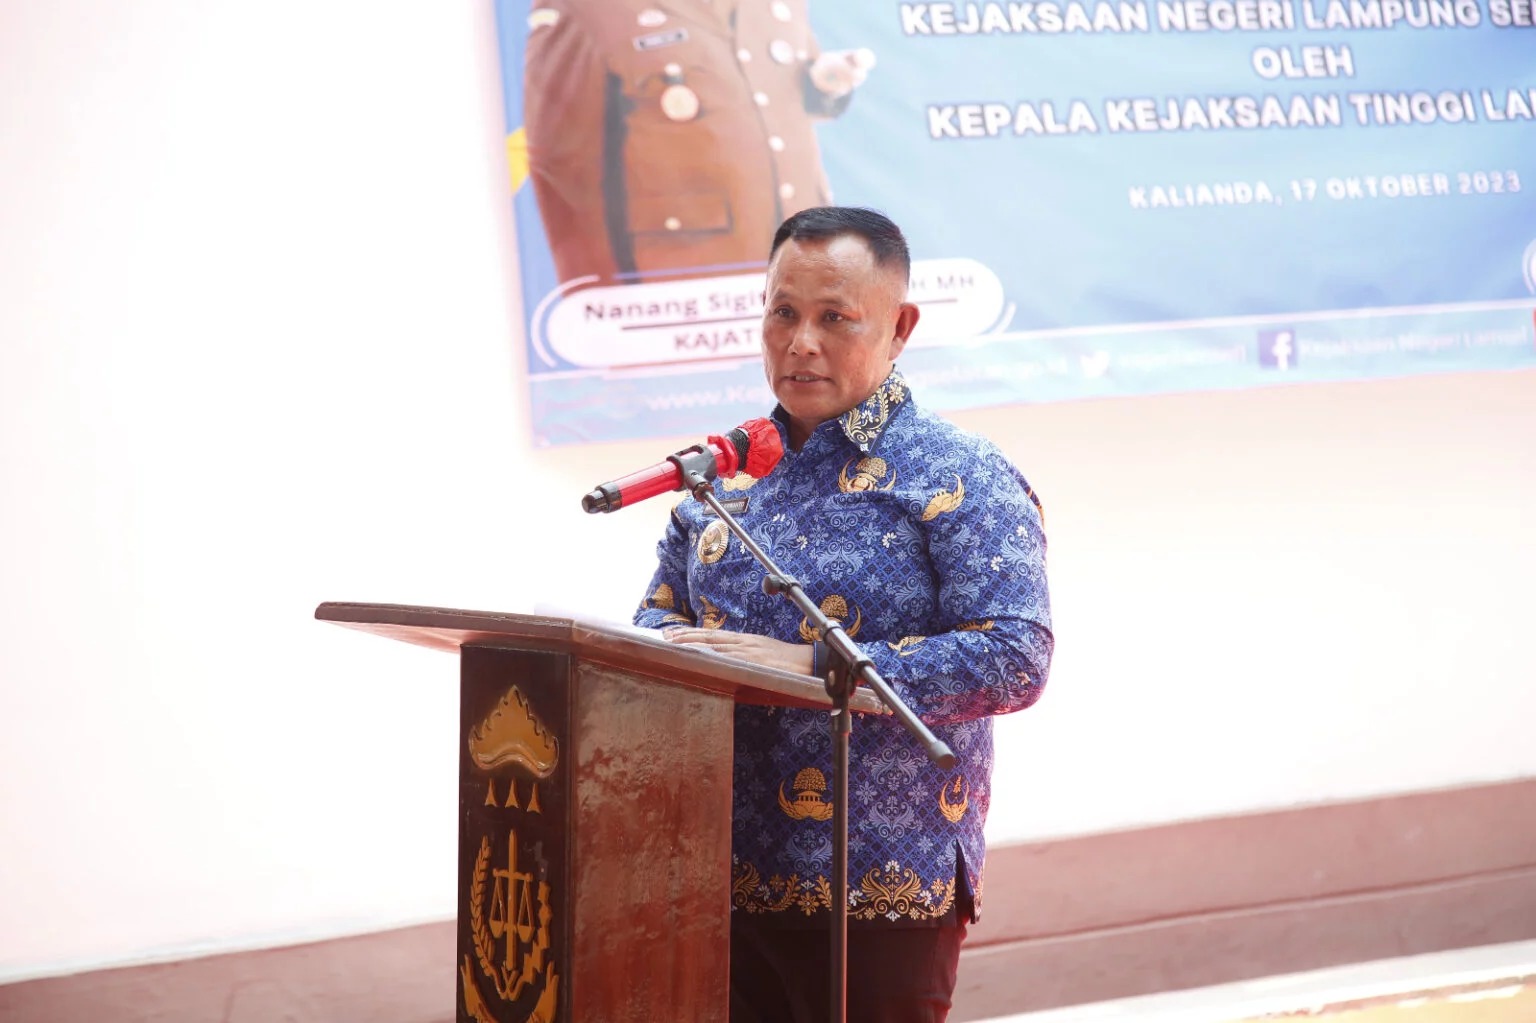 Bupati Lampung Selatan Hadir Di Acara Peresmian Rumah Dinas para Kasi dan Kasubbag Pembinaan Kejaksaan Negeri